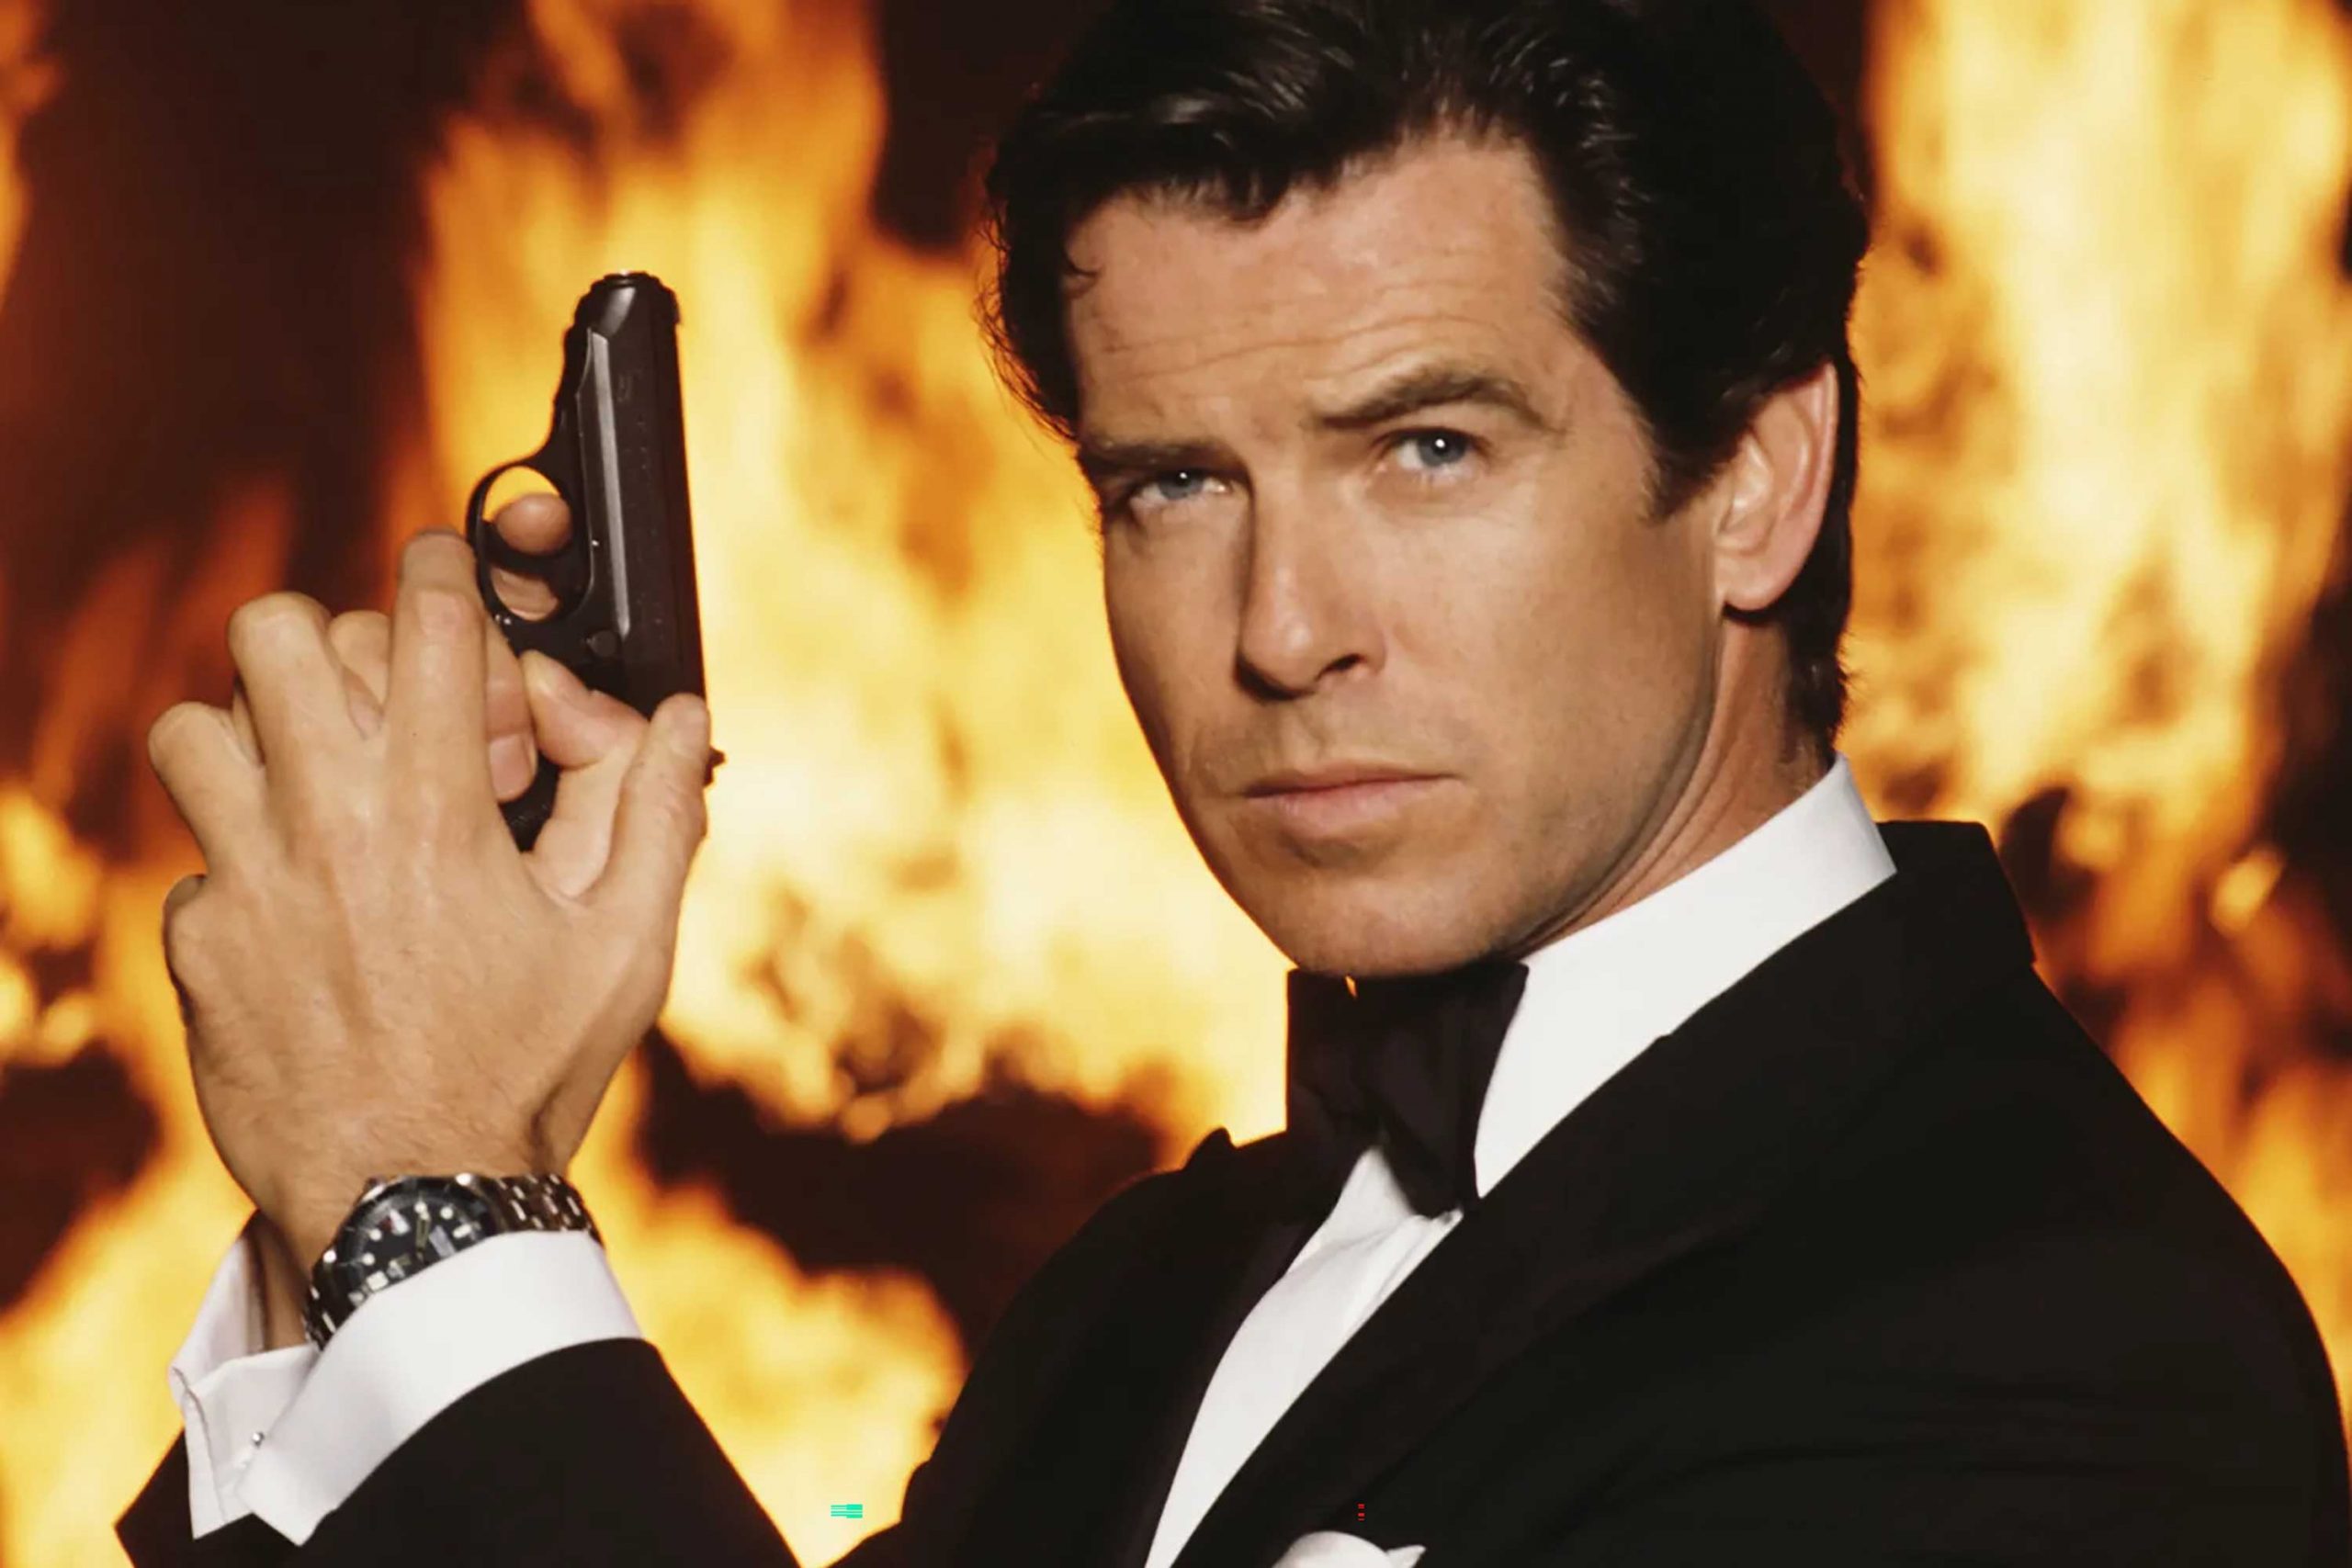 Pierce Brosnan posing for a poster for the 1995 Bond instalment, GoldenEye